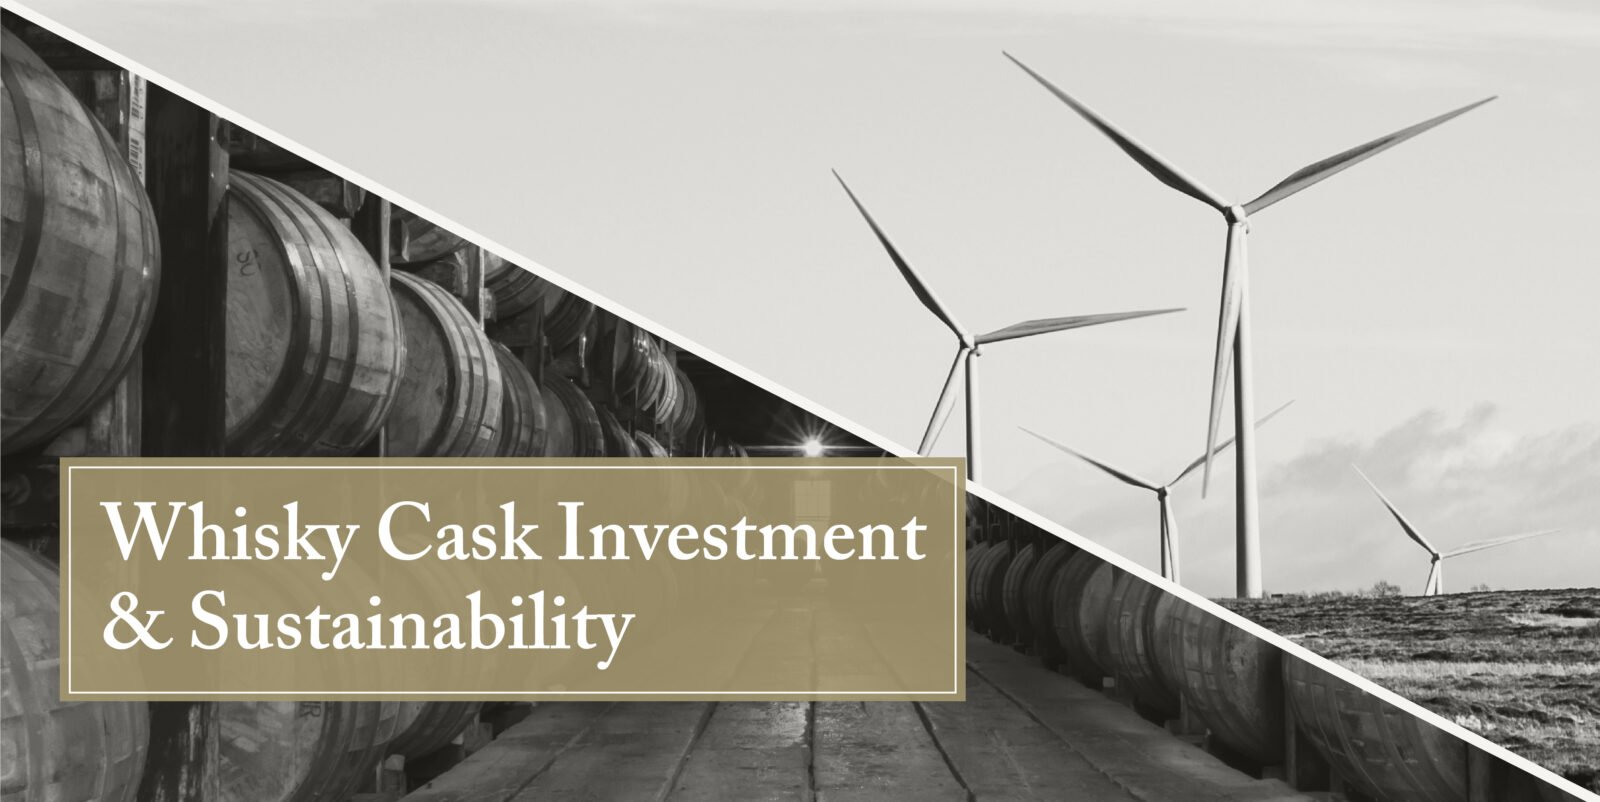 Whisky casks & sustainability